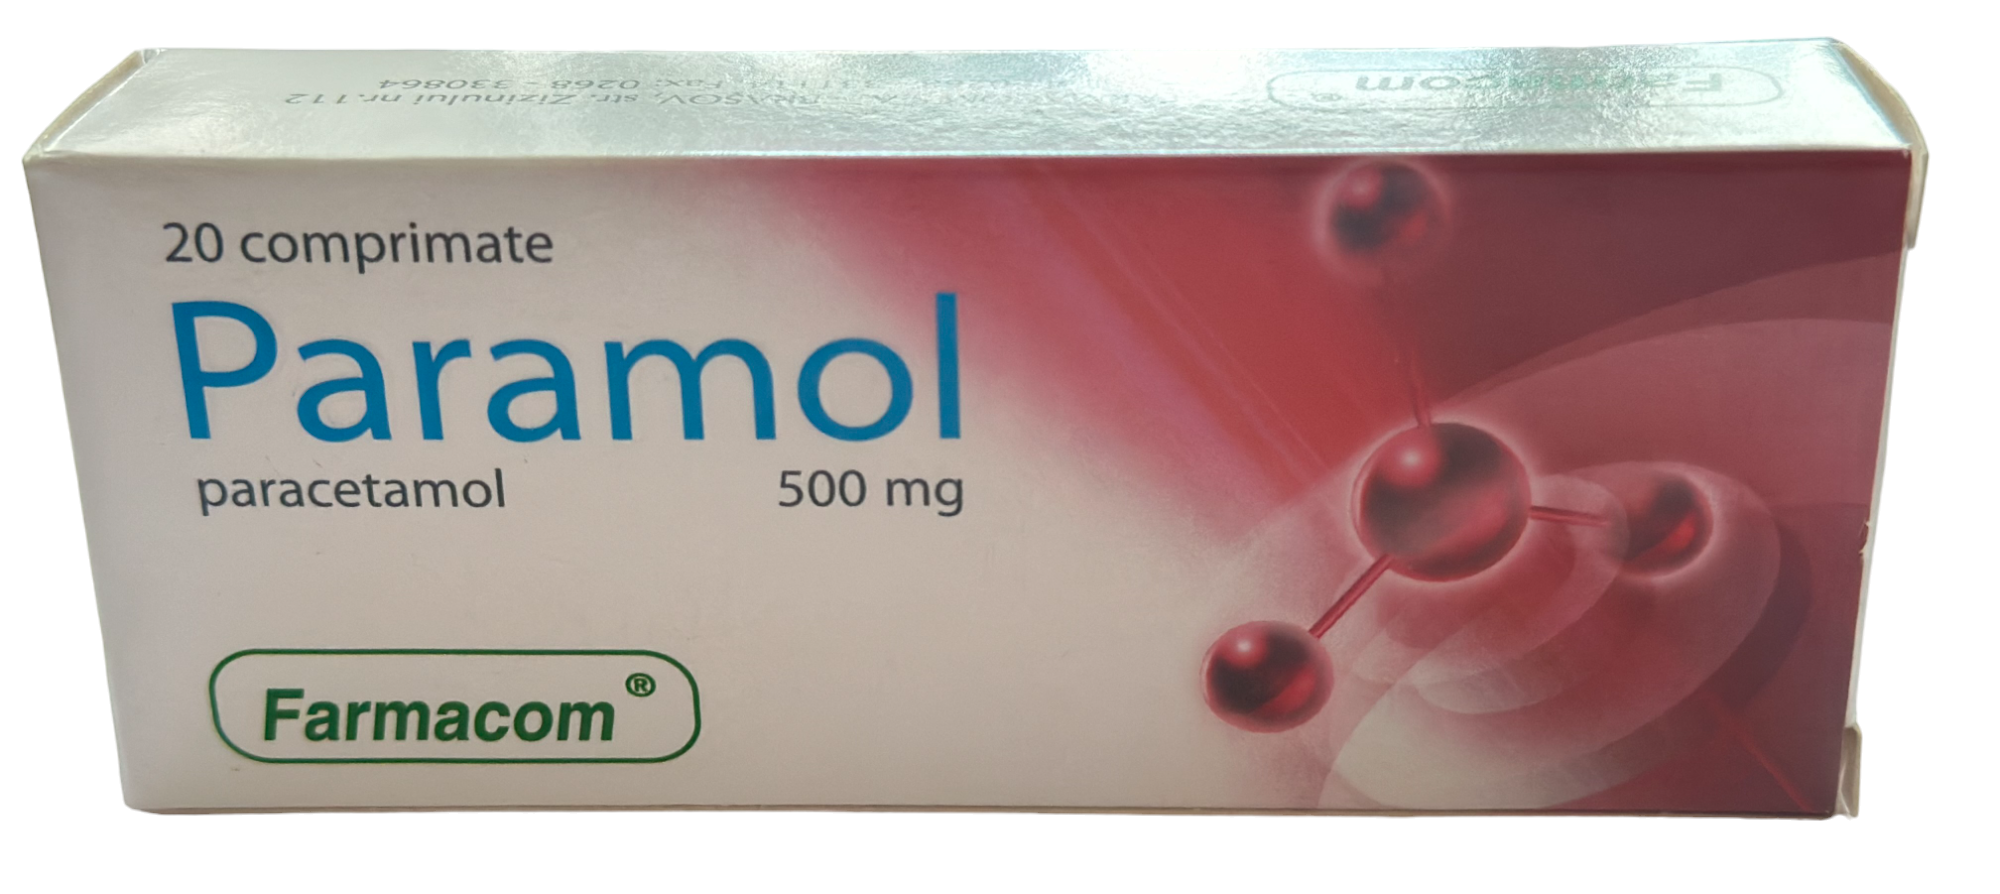 Medicamente fara reteta (OTC) - Paramol, 500 mg, 20 comprimate, Farmacom, farmacom.ro